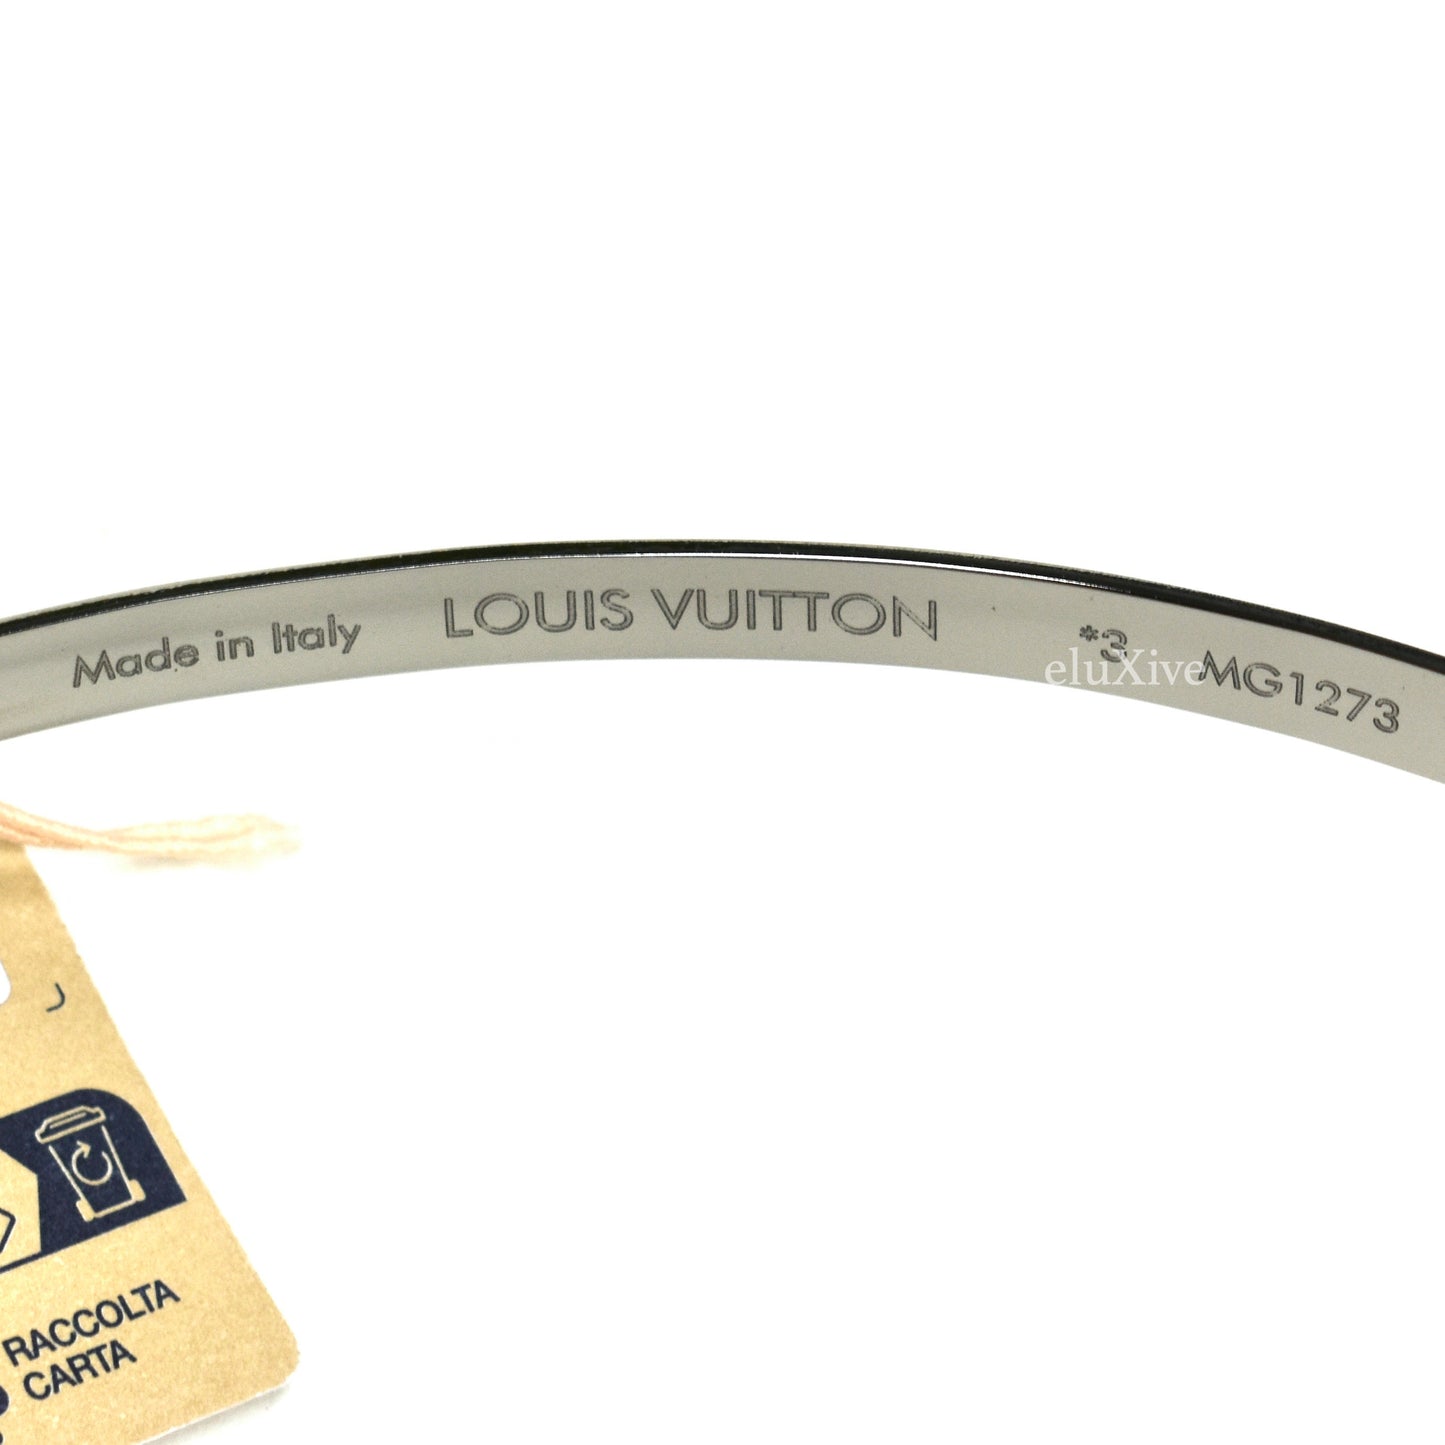 Louis Vuitton - Fiction Mask Sunglasses – eluXive